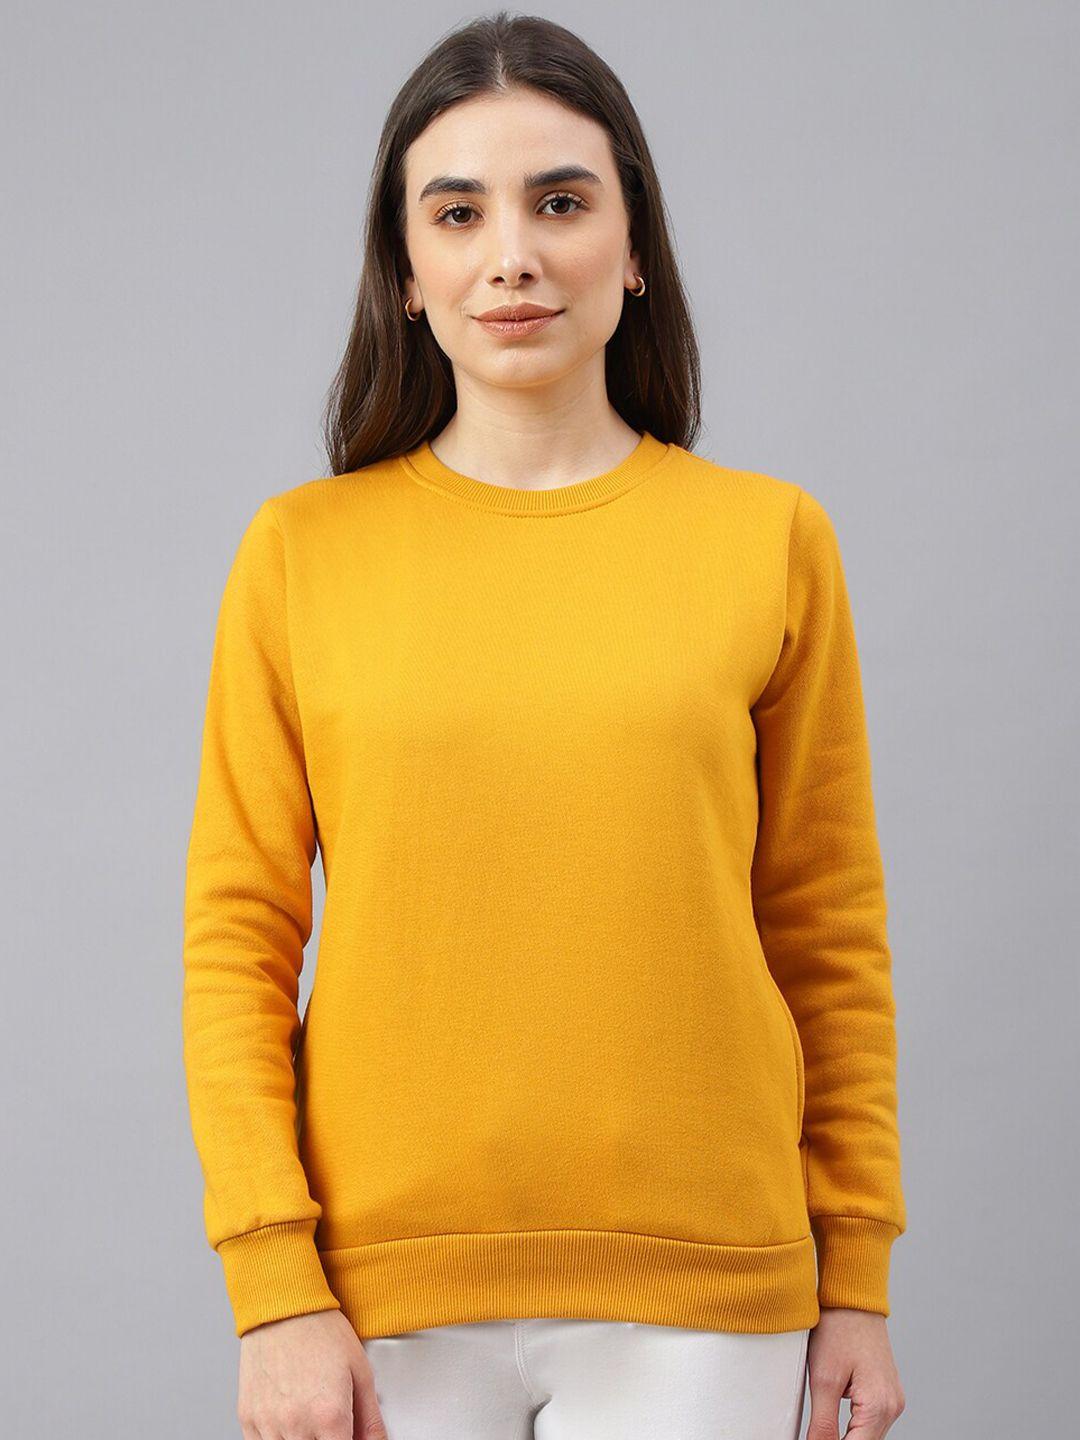 besimple women solid cotton round neck sweatshirt